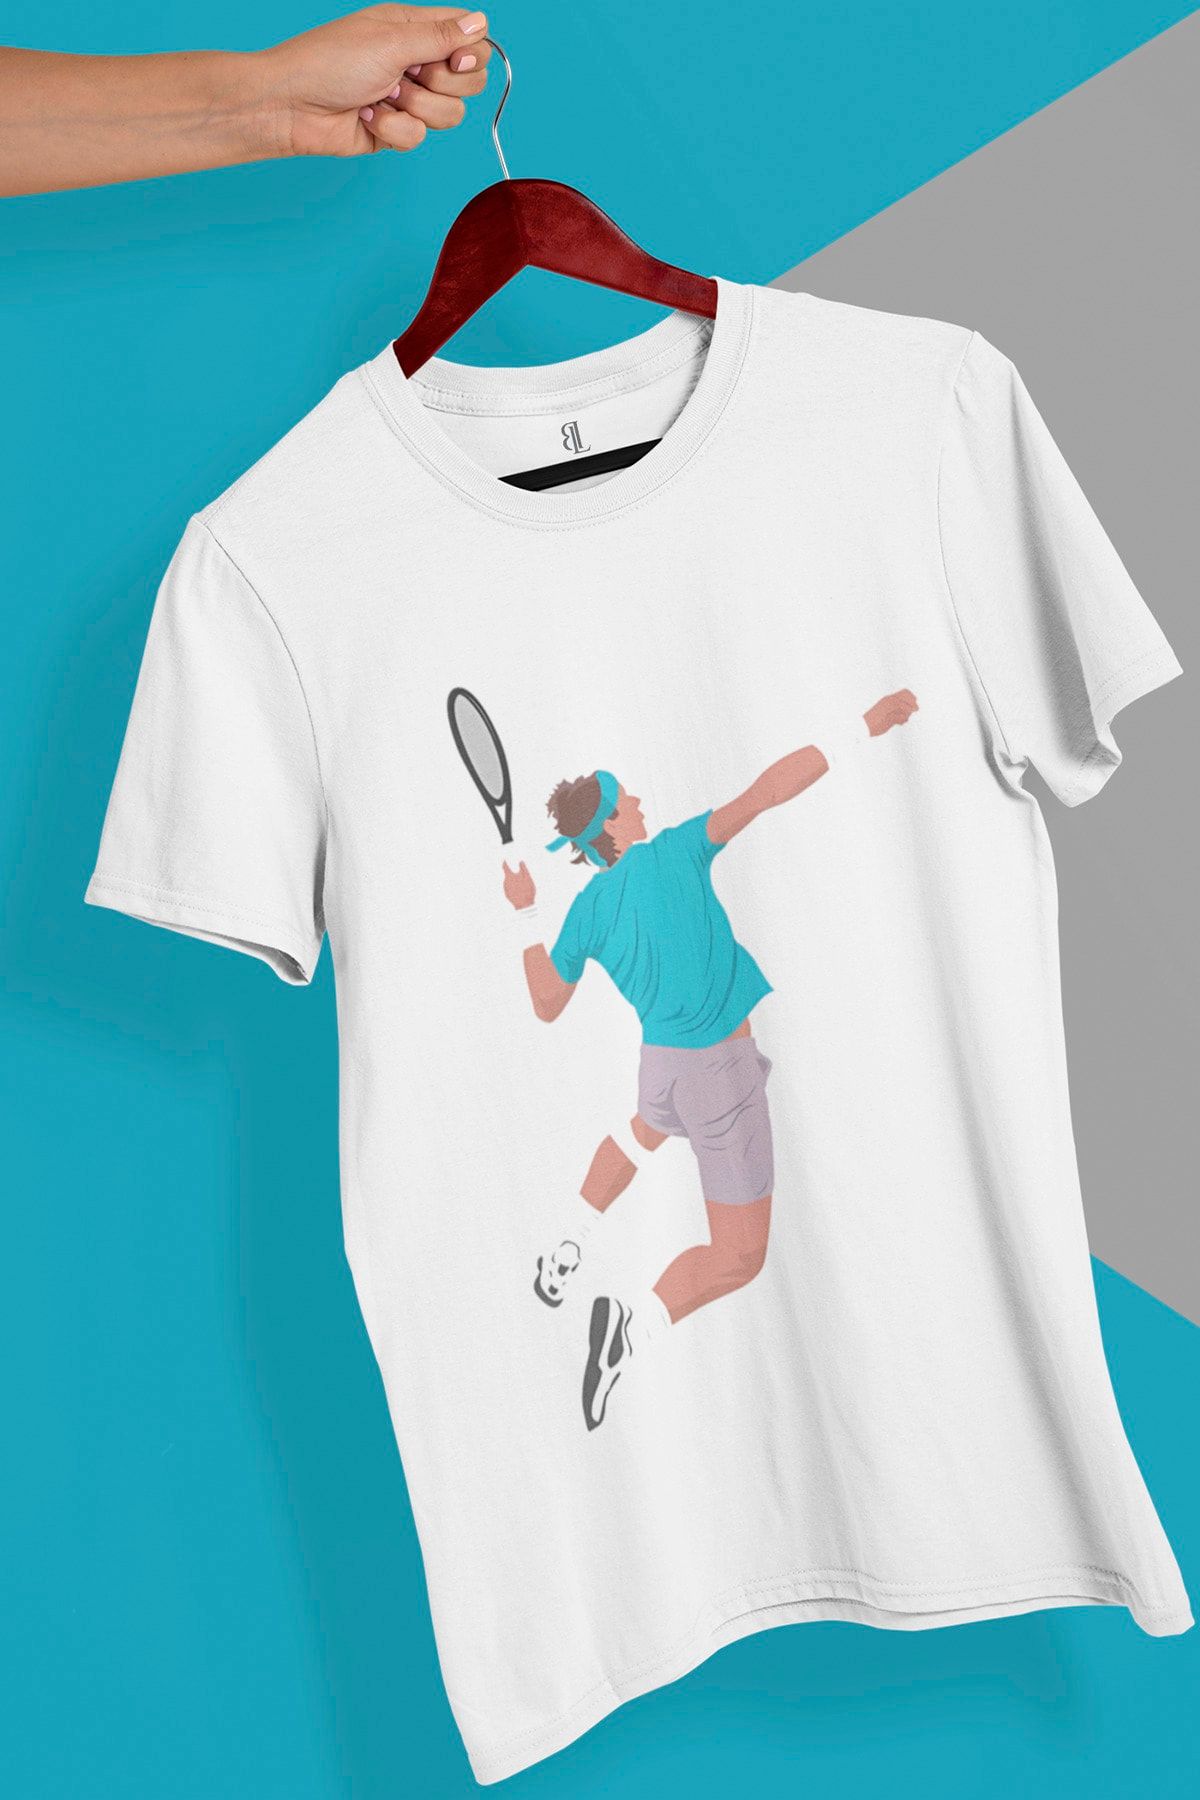 Genel Markalar Unisex Rafa Nadal Tennis T-shirt